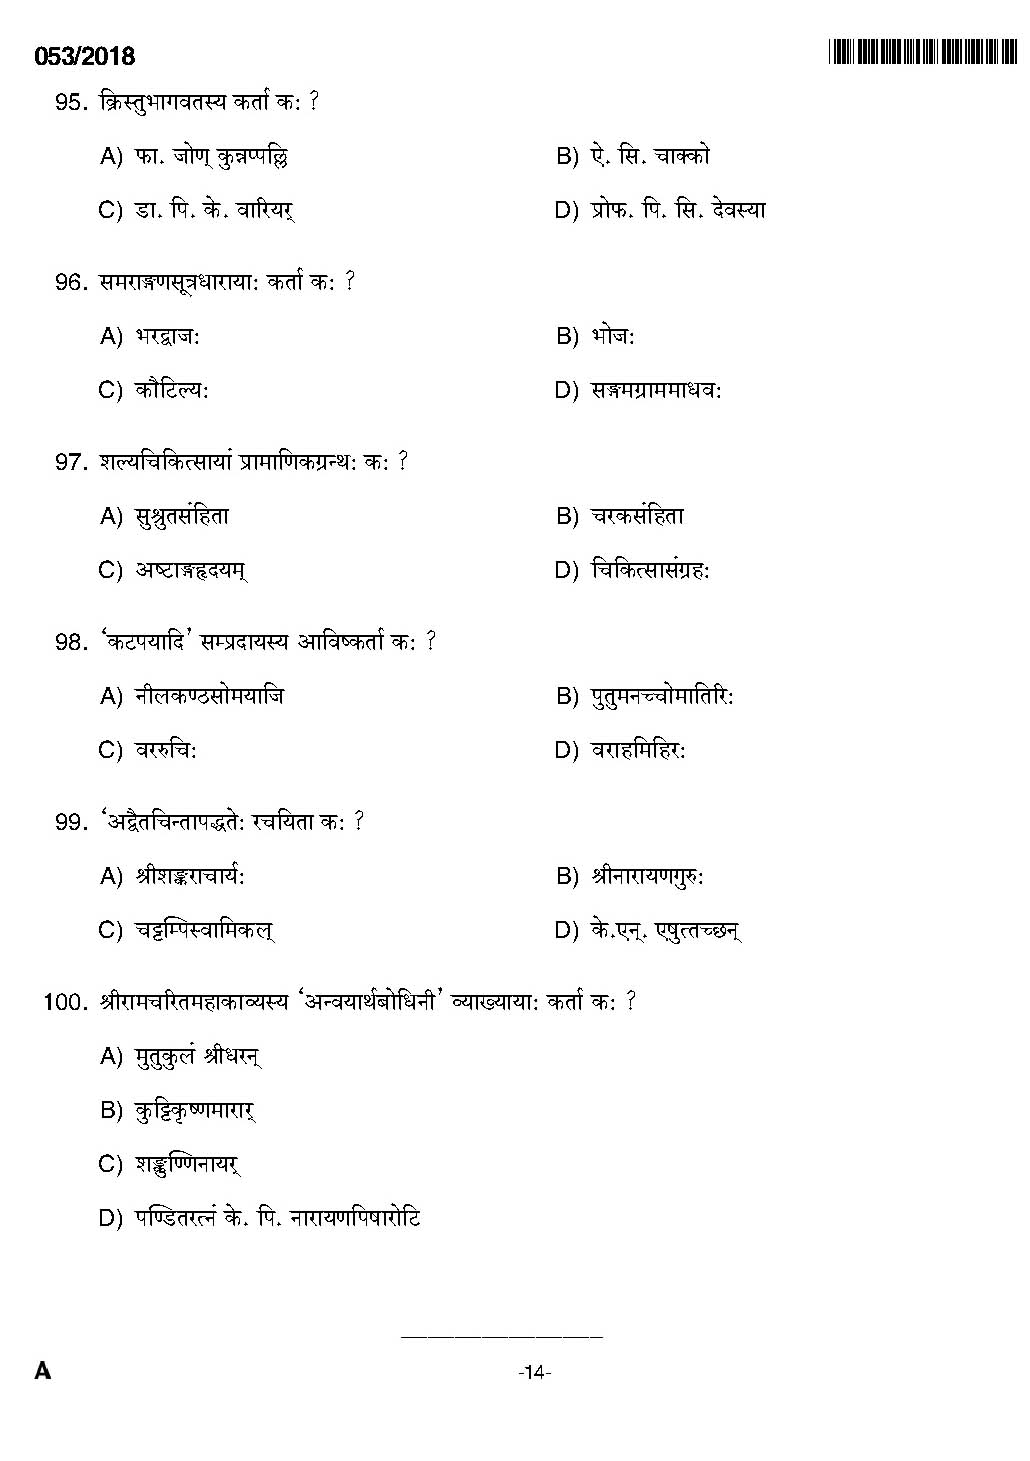 KPSC Higher Secondary School Teacher Exam Question 0532018 12